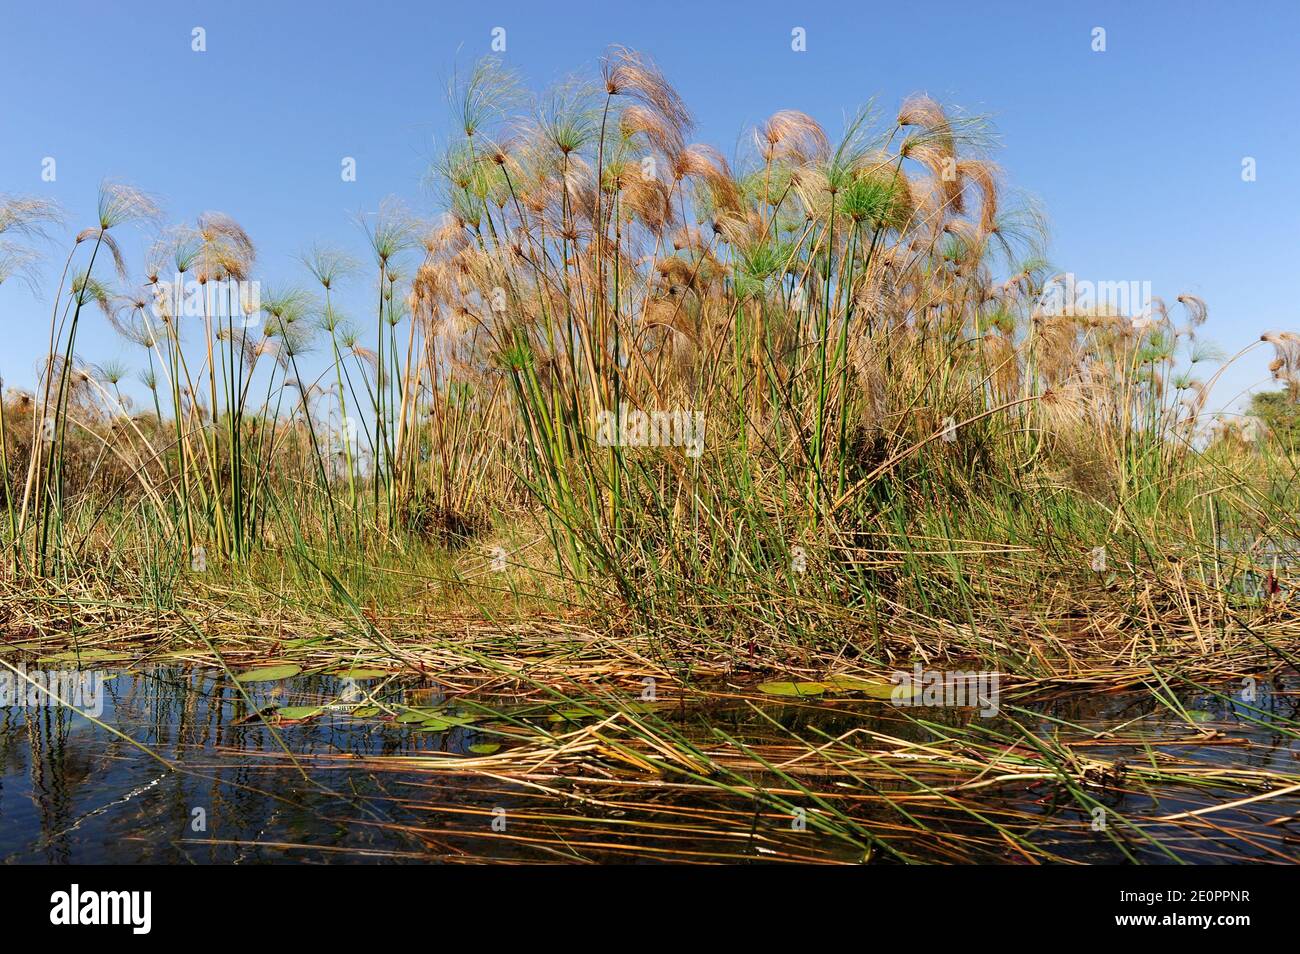 L'erba del papiro (Cyperus papyrus) è un'erba perenne acquatica originaria dell'Africa. Questa foto è stata scattata a Okavango Delta, Botswana. Foto Stock